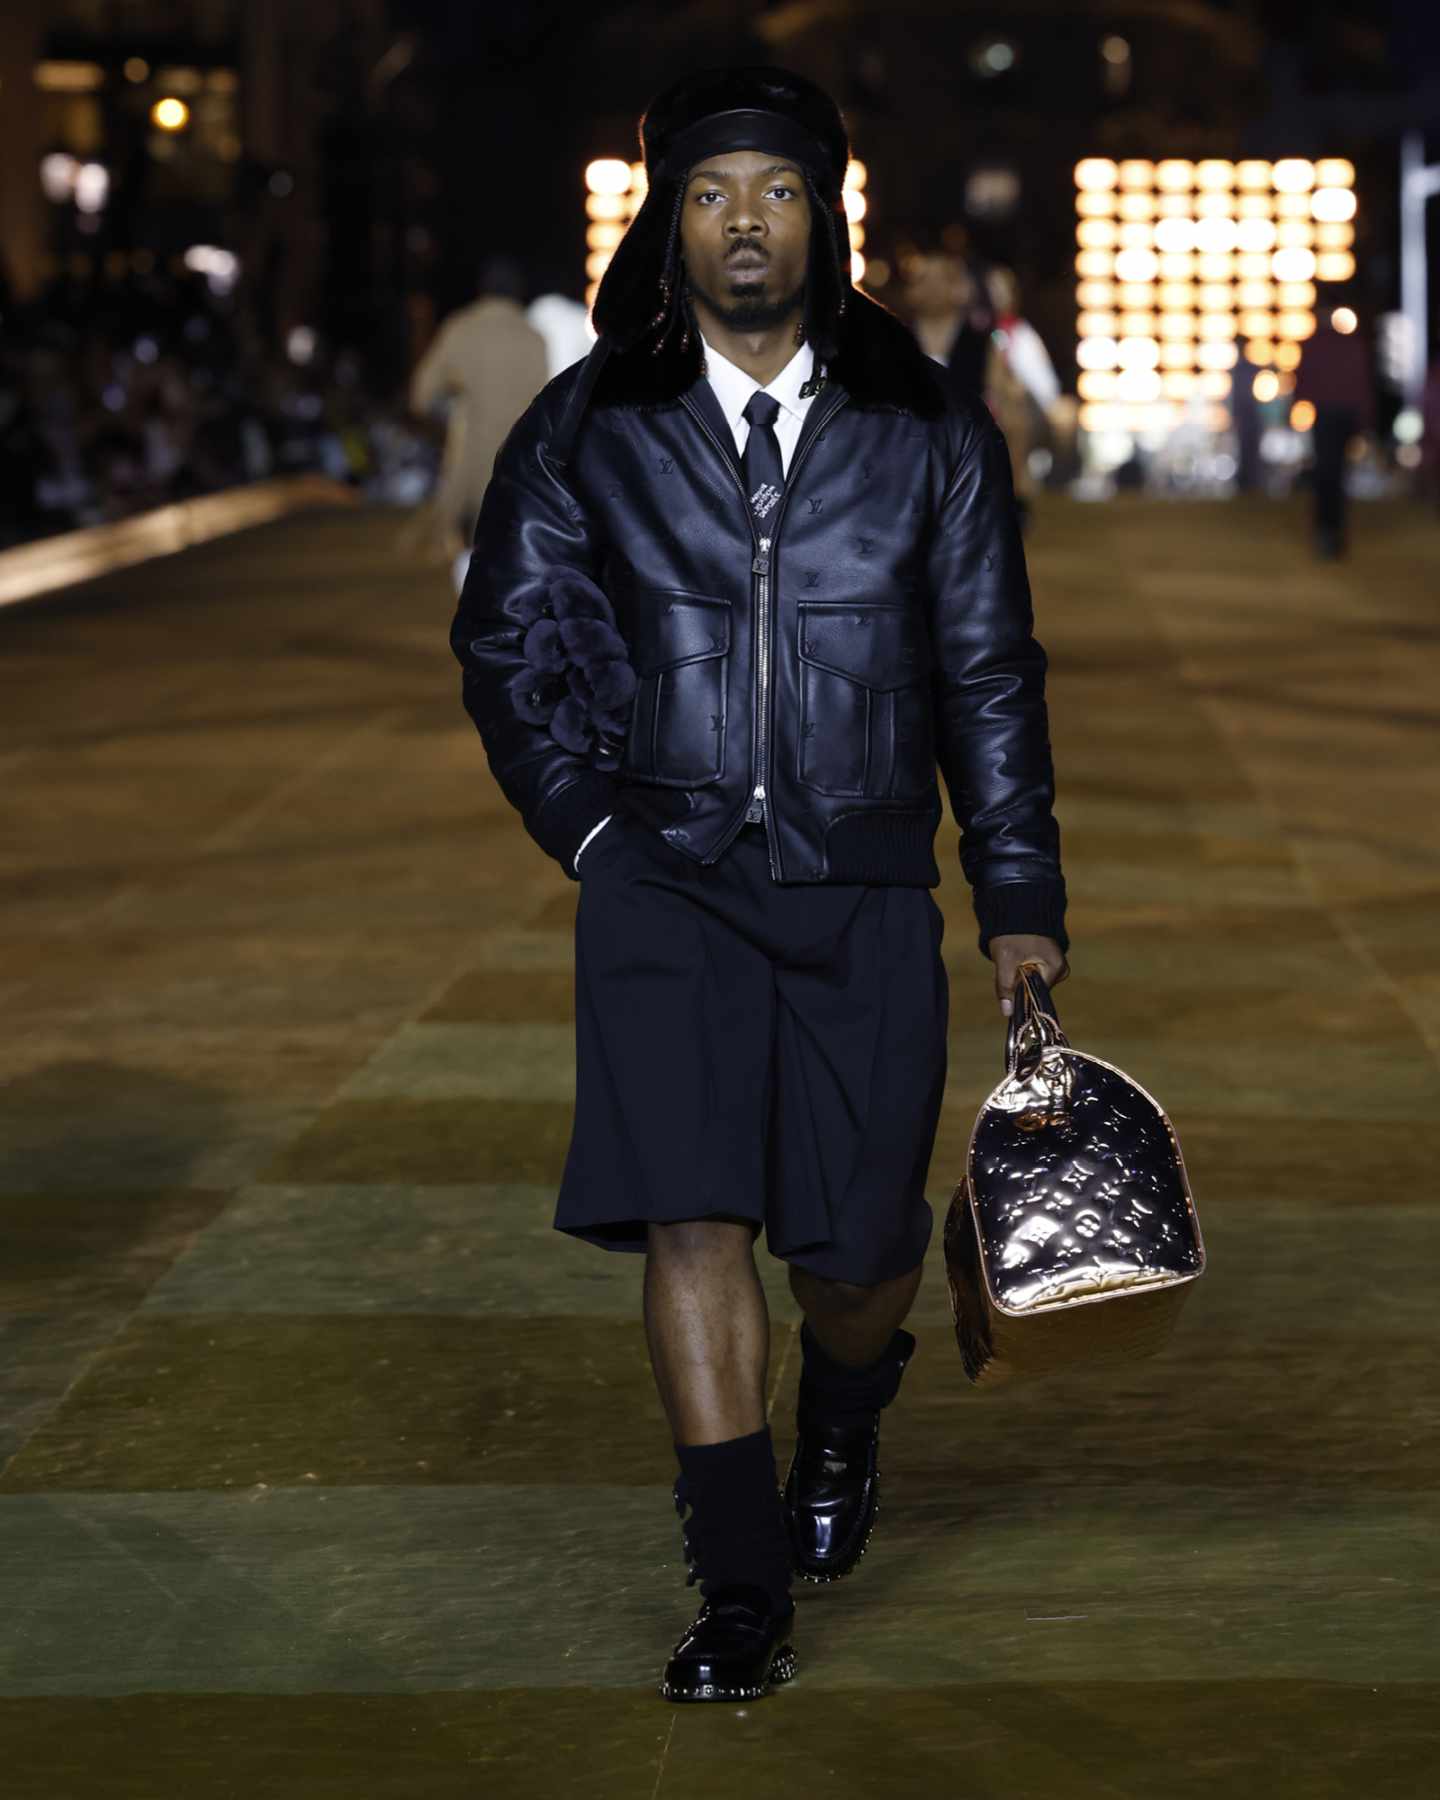 Louis Vuitton Shearling Embossed Monogram Jacket BLACK. Size 50